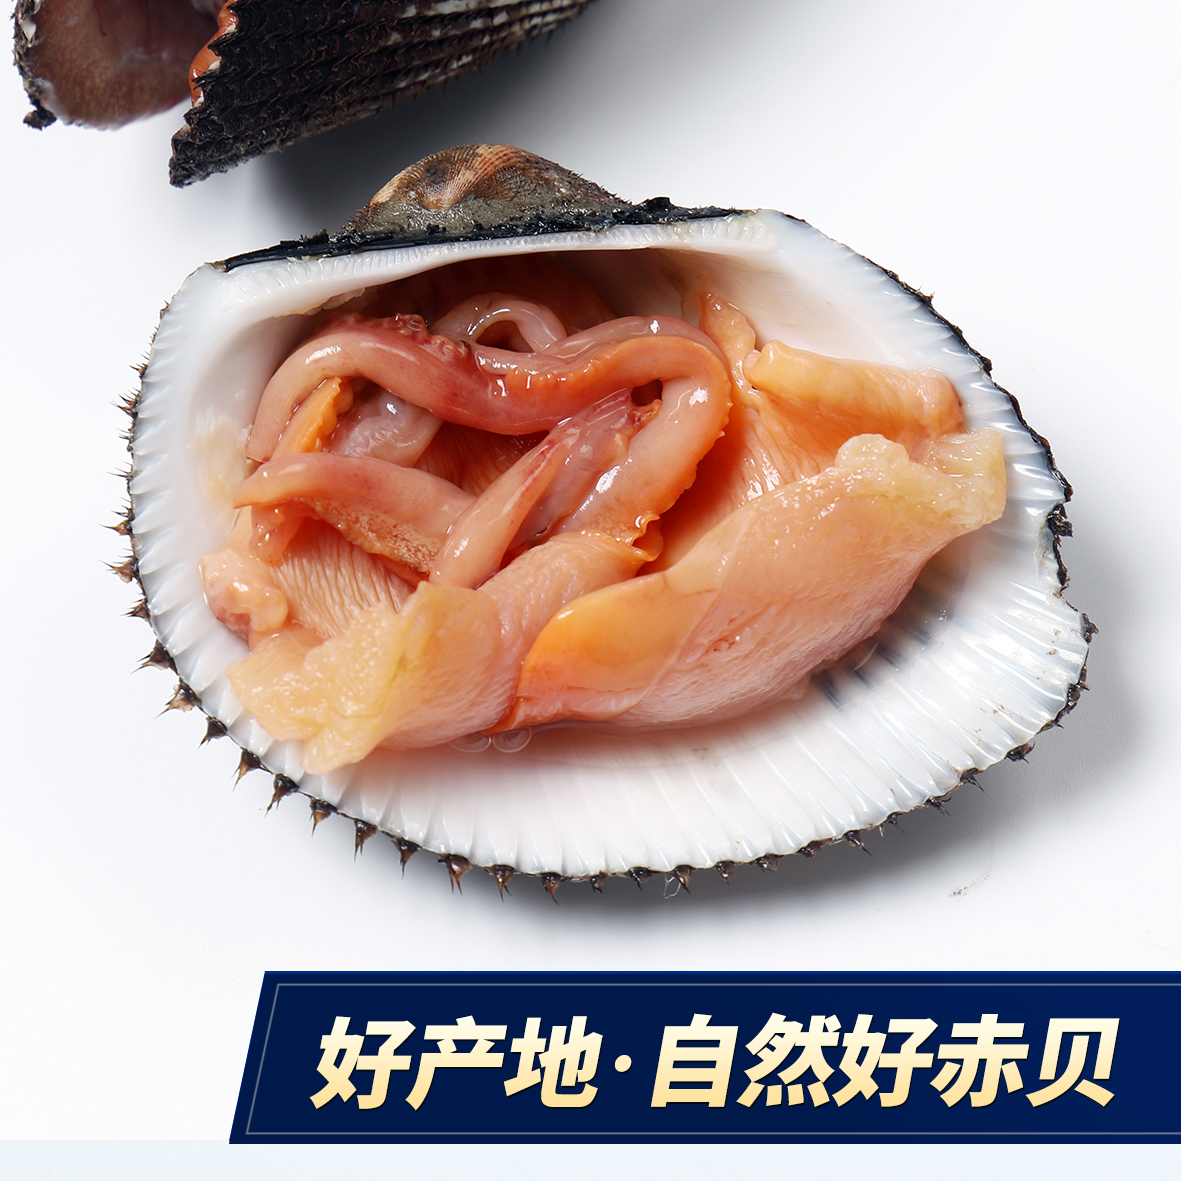 大连大赤贝海鲜水产贝类鲜活新鲜大毛蚶野生毛蛤血蛤日料刺身一斤 - 图1